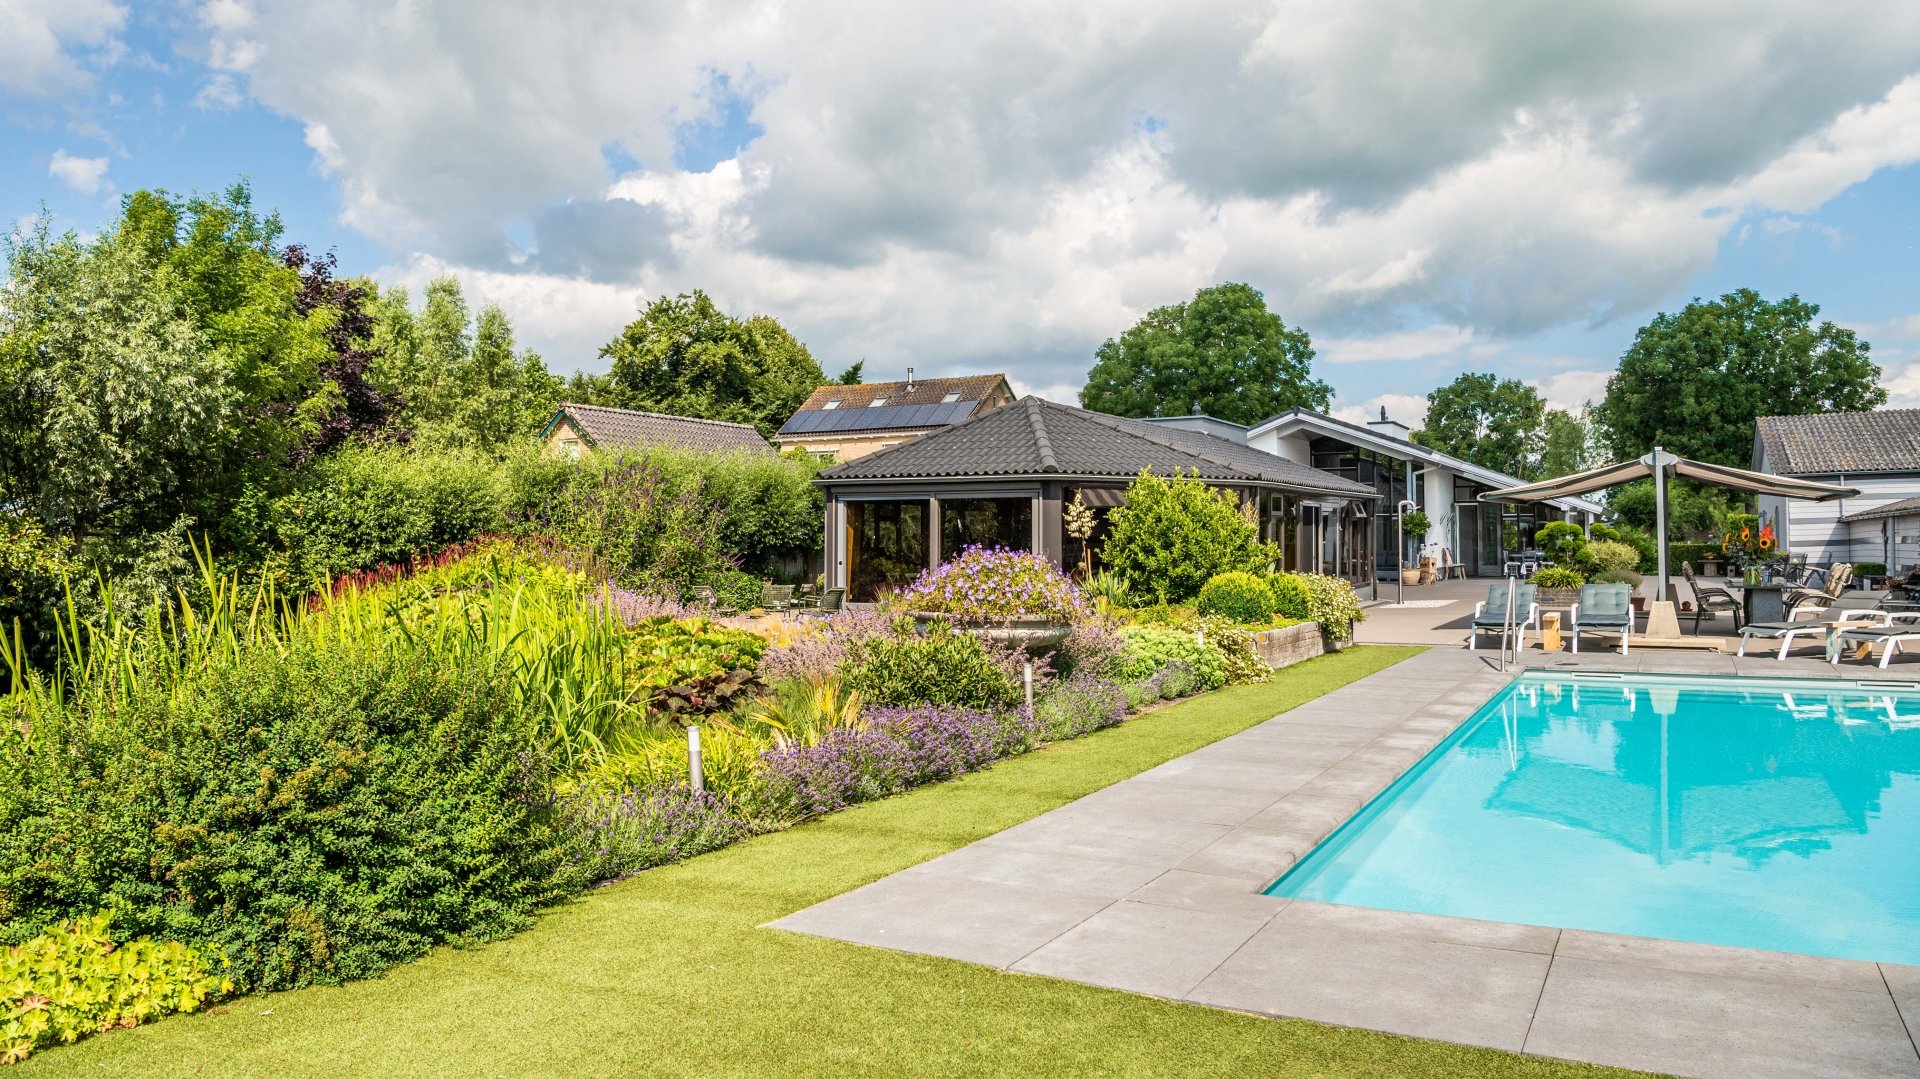 Villa-met-zwembad-omringd-door-groen-1-De-Ruijter-Tuinen